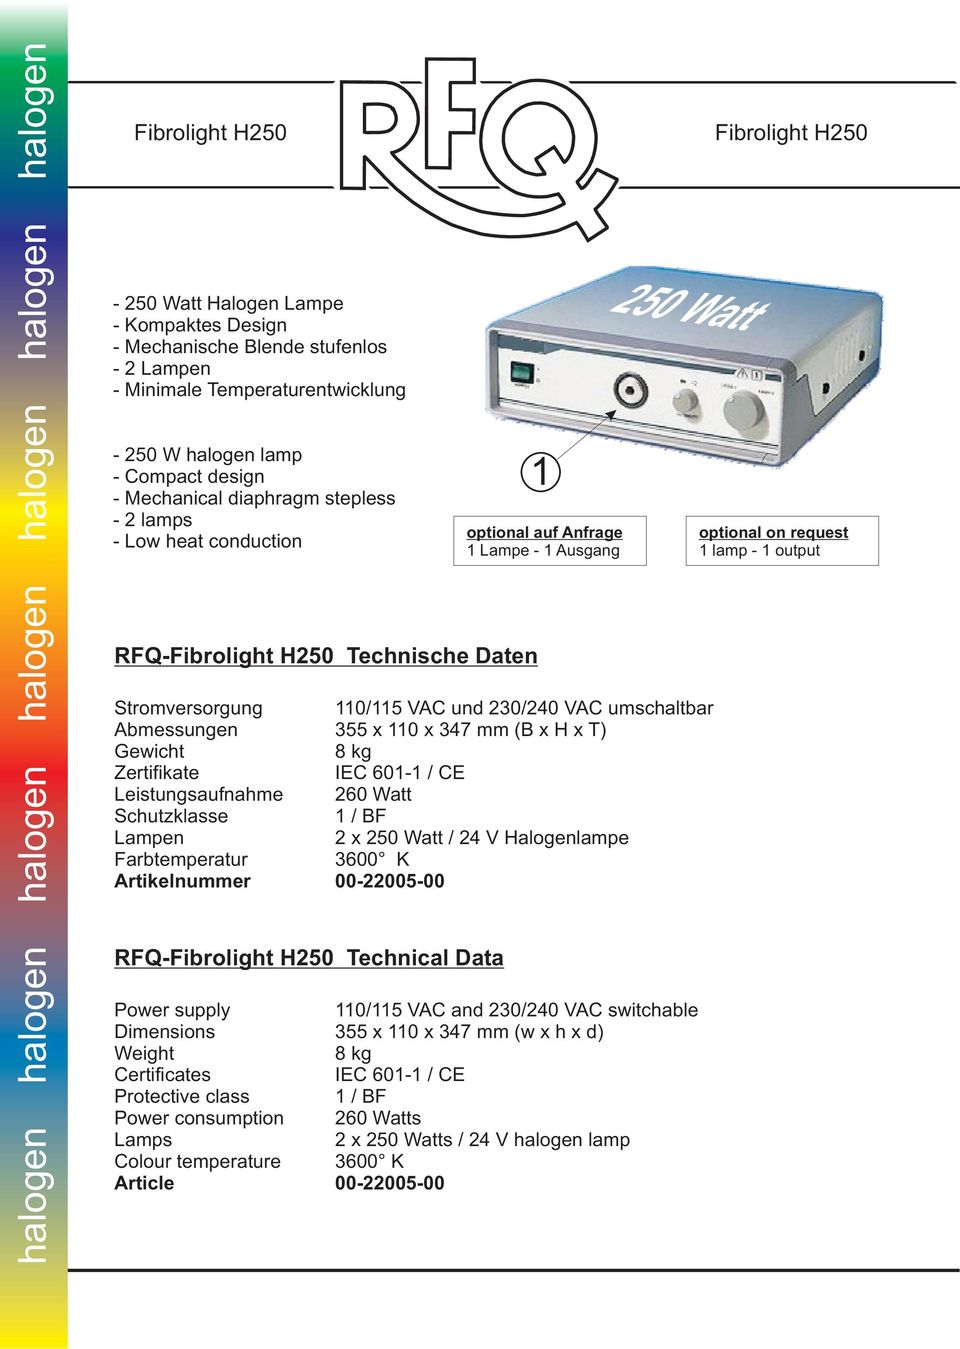 Schutzklasse RFQ-Fibrolight H250 Technical Data Protective class Power consumption Colour temperature 1 optional auf Anfrage 1 Lampe - 1 Ausgang 250 Watt